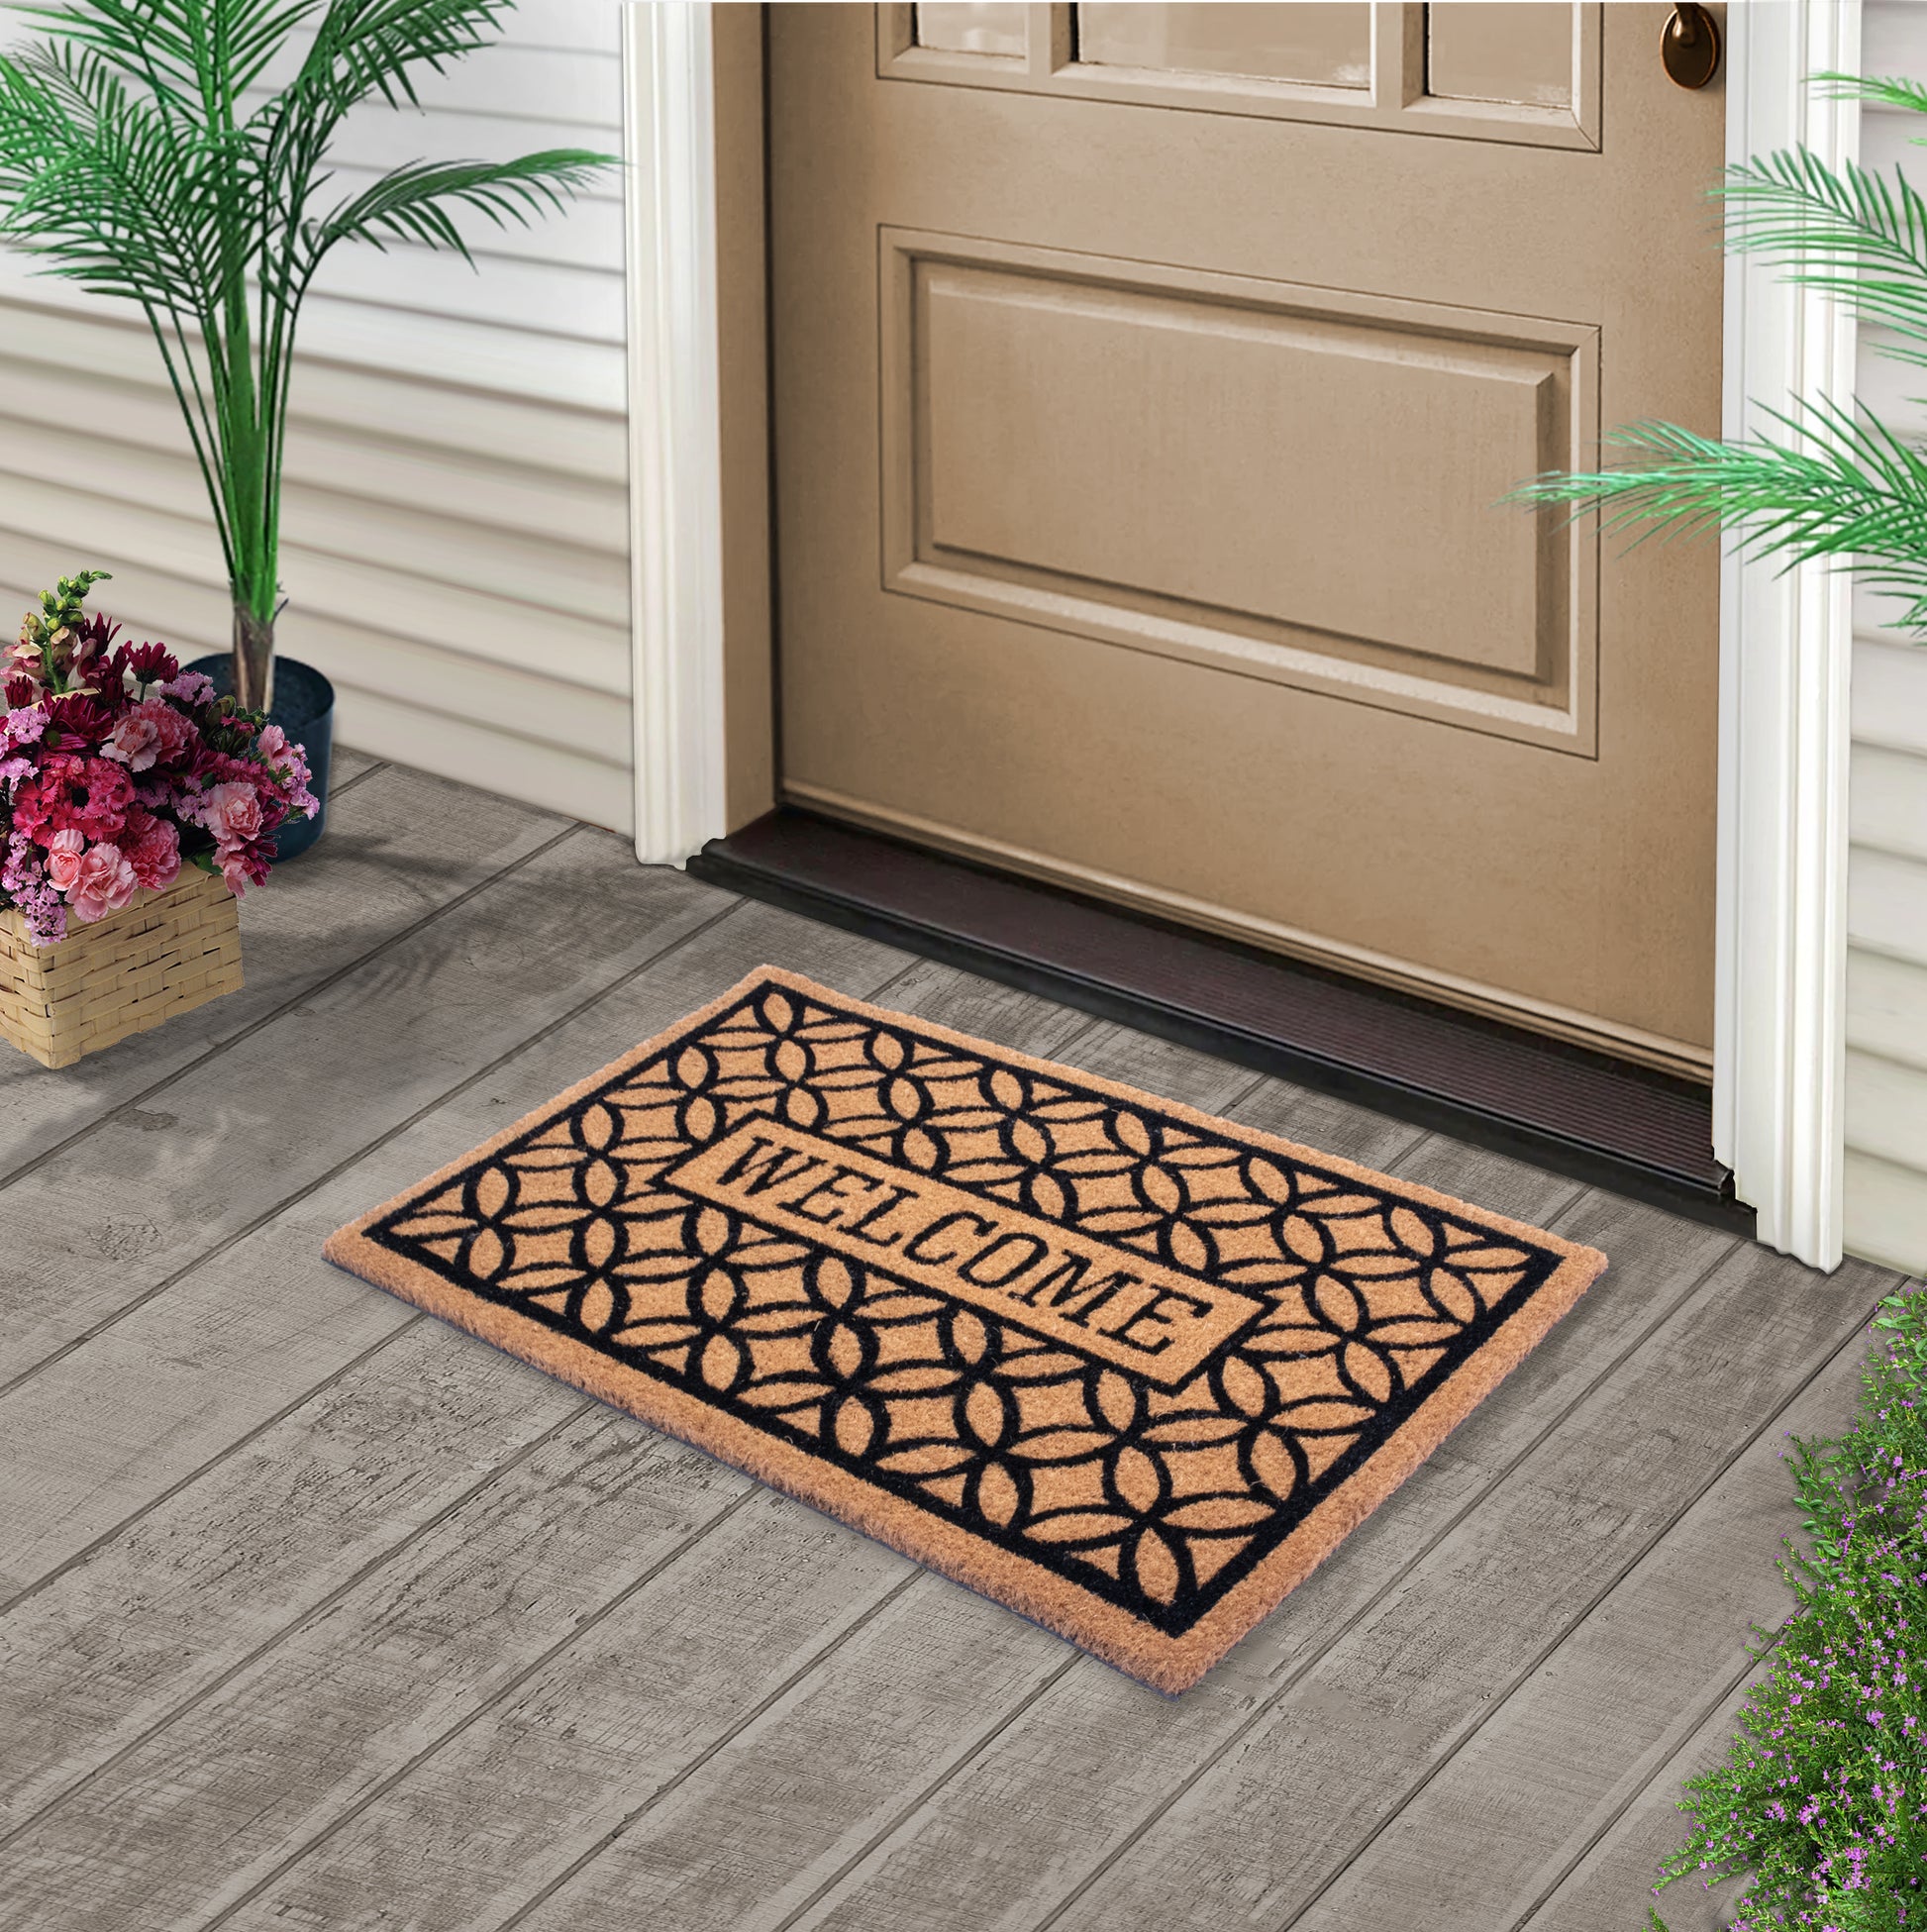 Welcome to Our Home' Doormat, Indoor Outdoor Rug, Large Front Door Mat  Outdoor